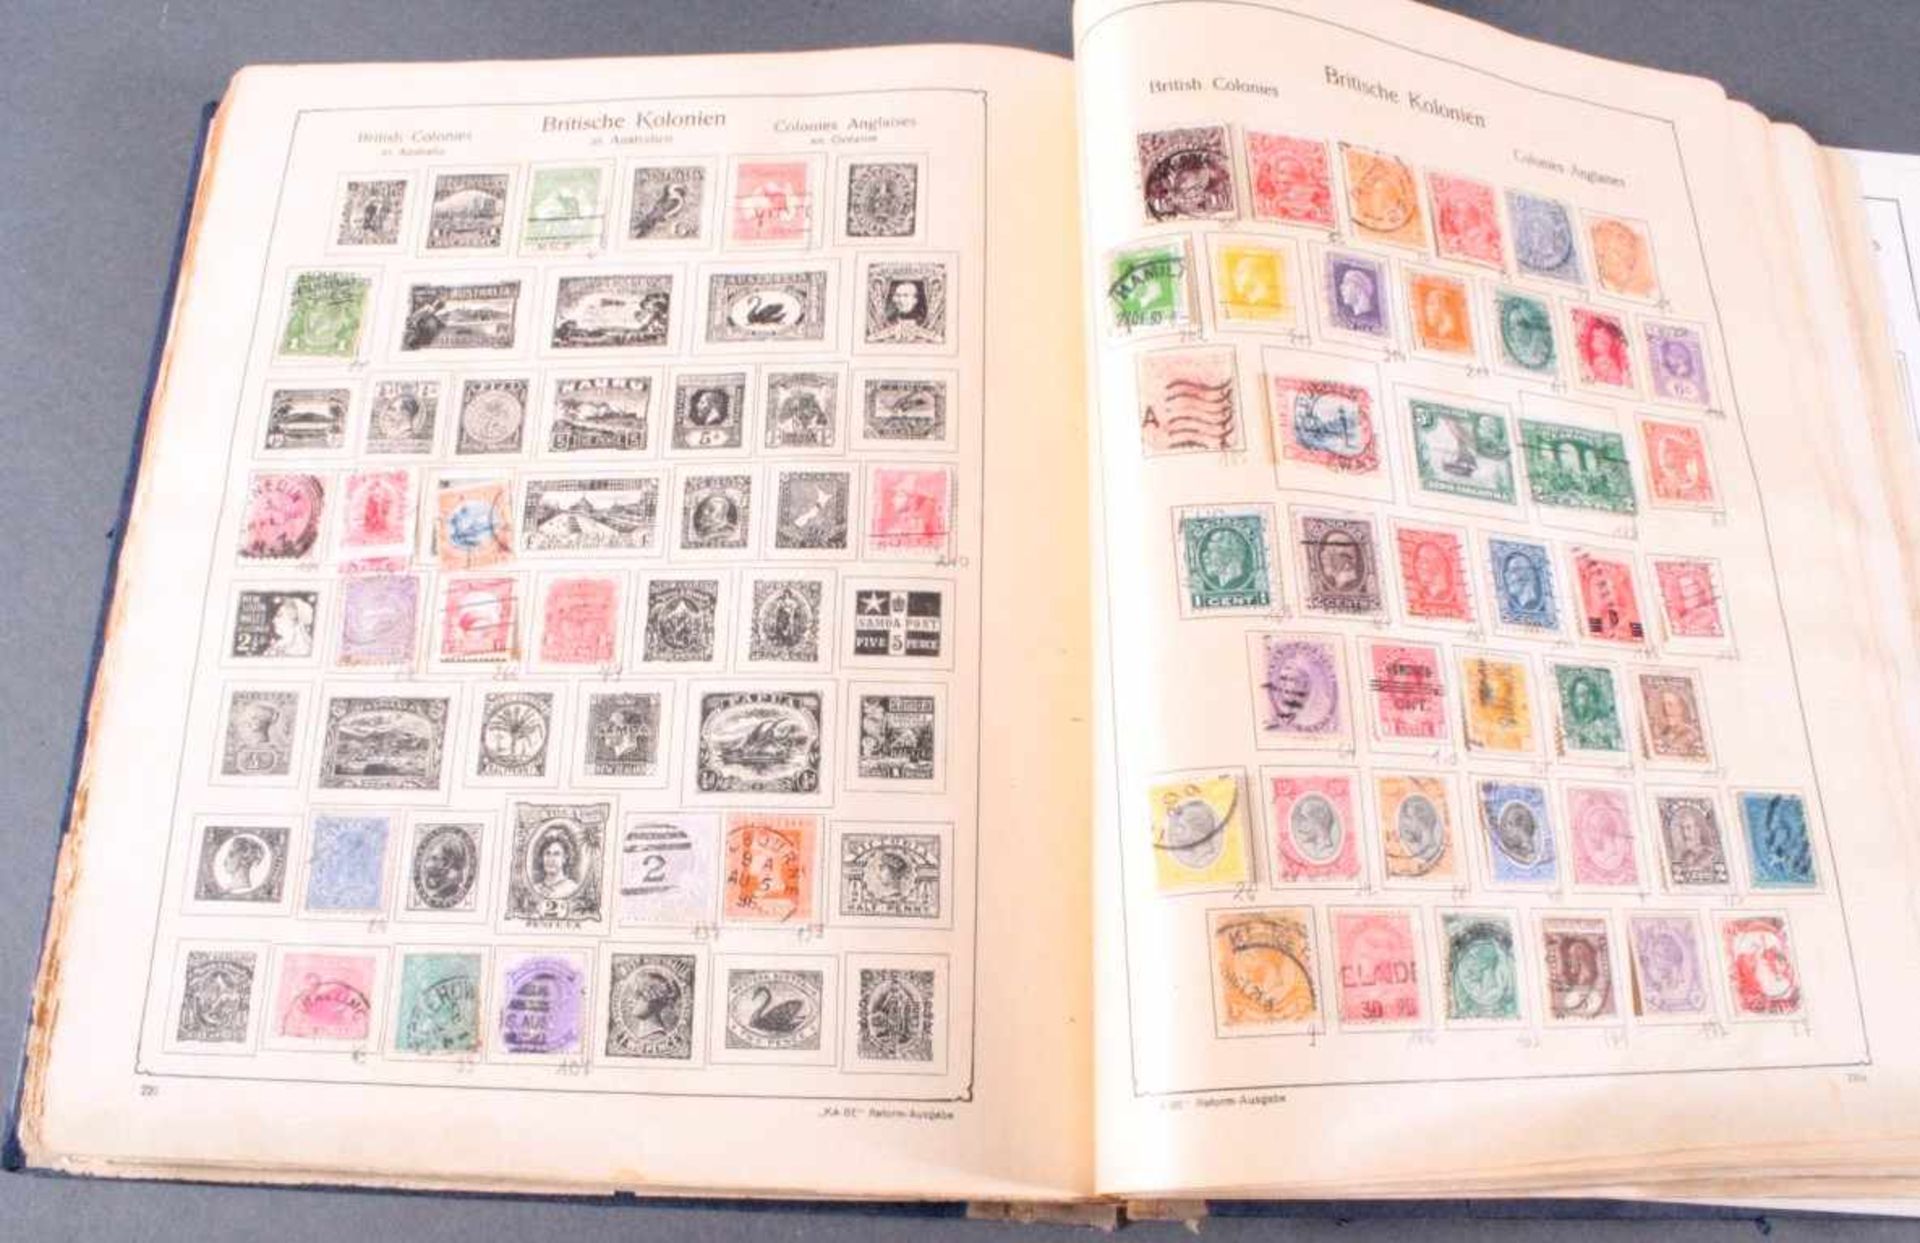 KABE SCHWARTEKABE Briefmarken - Album, Reform Ausgabe No.4 1936 mitDeutschem Reich, Europa und - Bild 3 aus 8